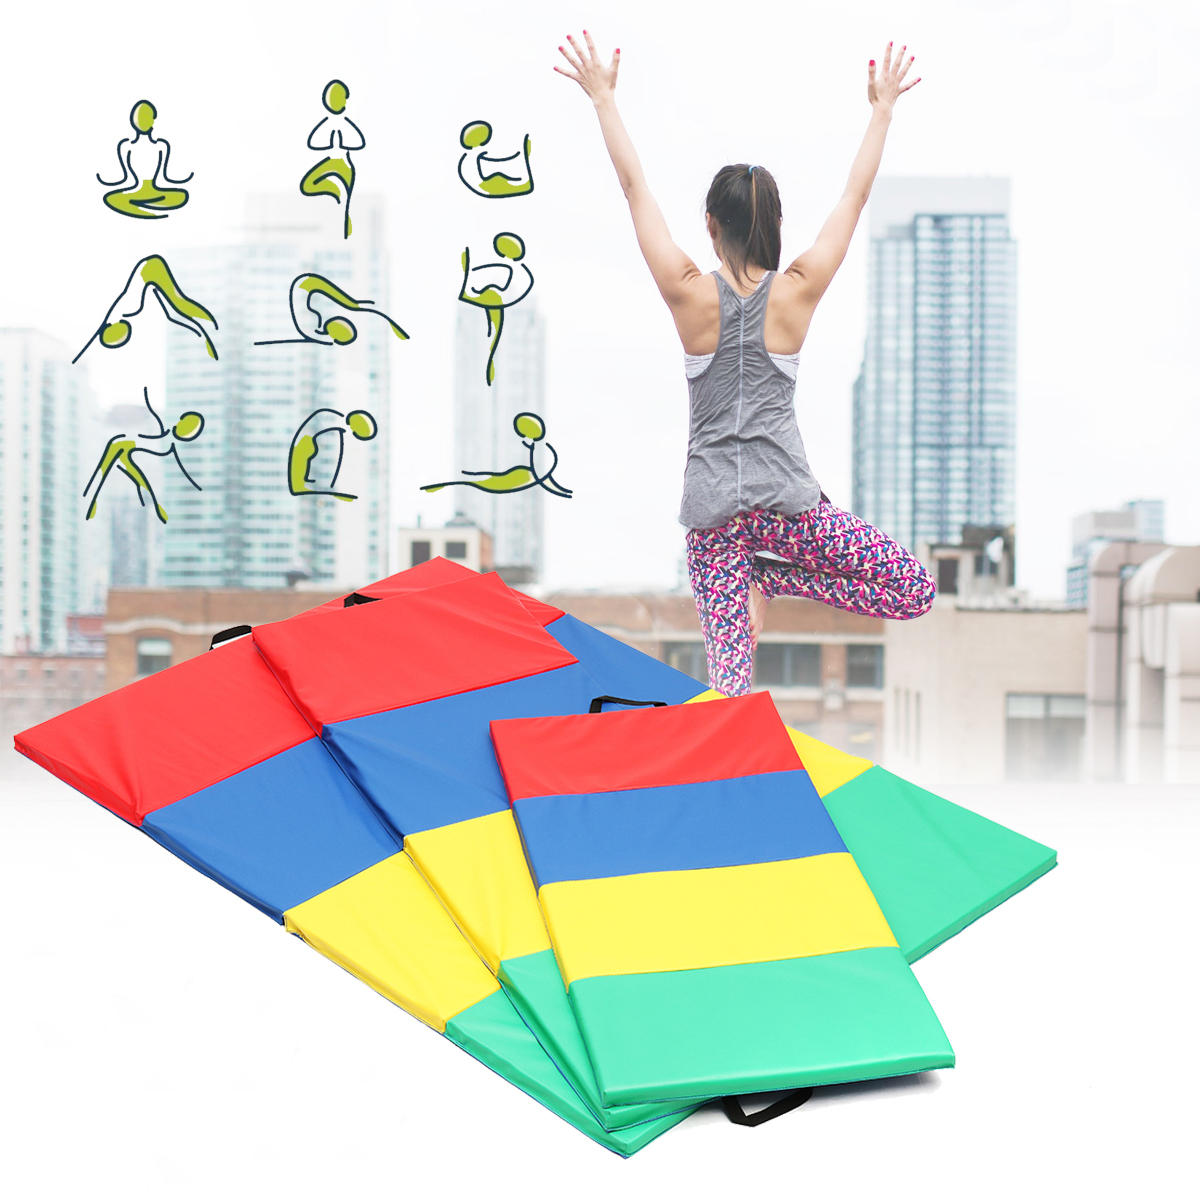 4 összecsukható tornaszőnyeg jóga, edzés, légi pályapanelek tumbling, mászás és pilates céljából